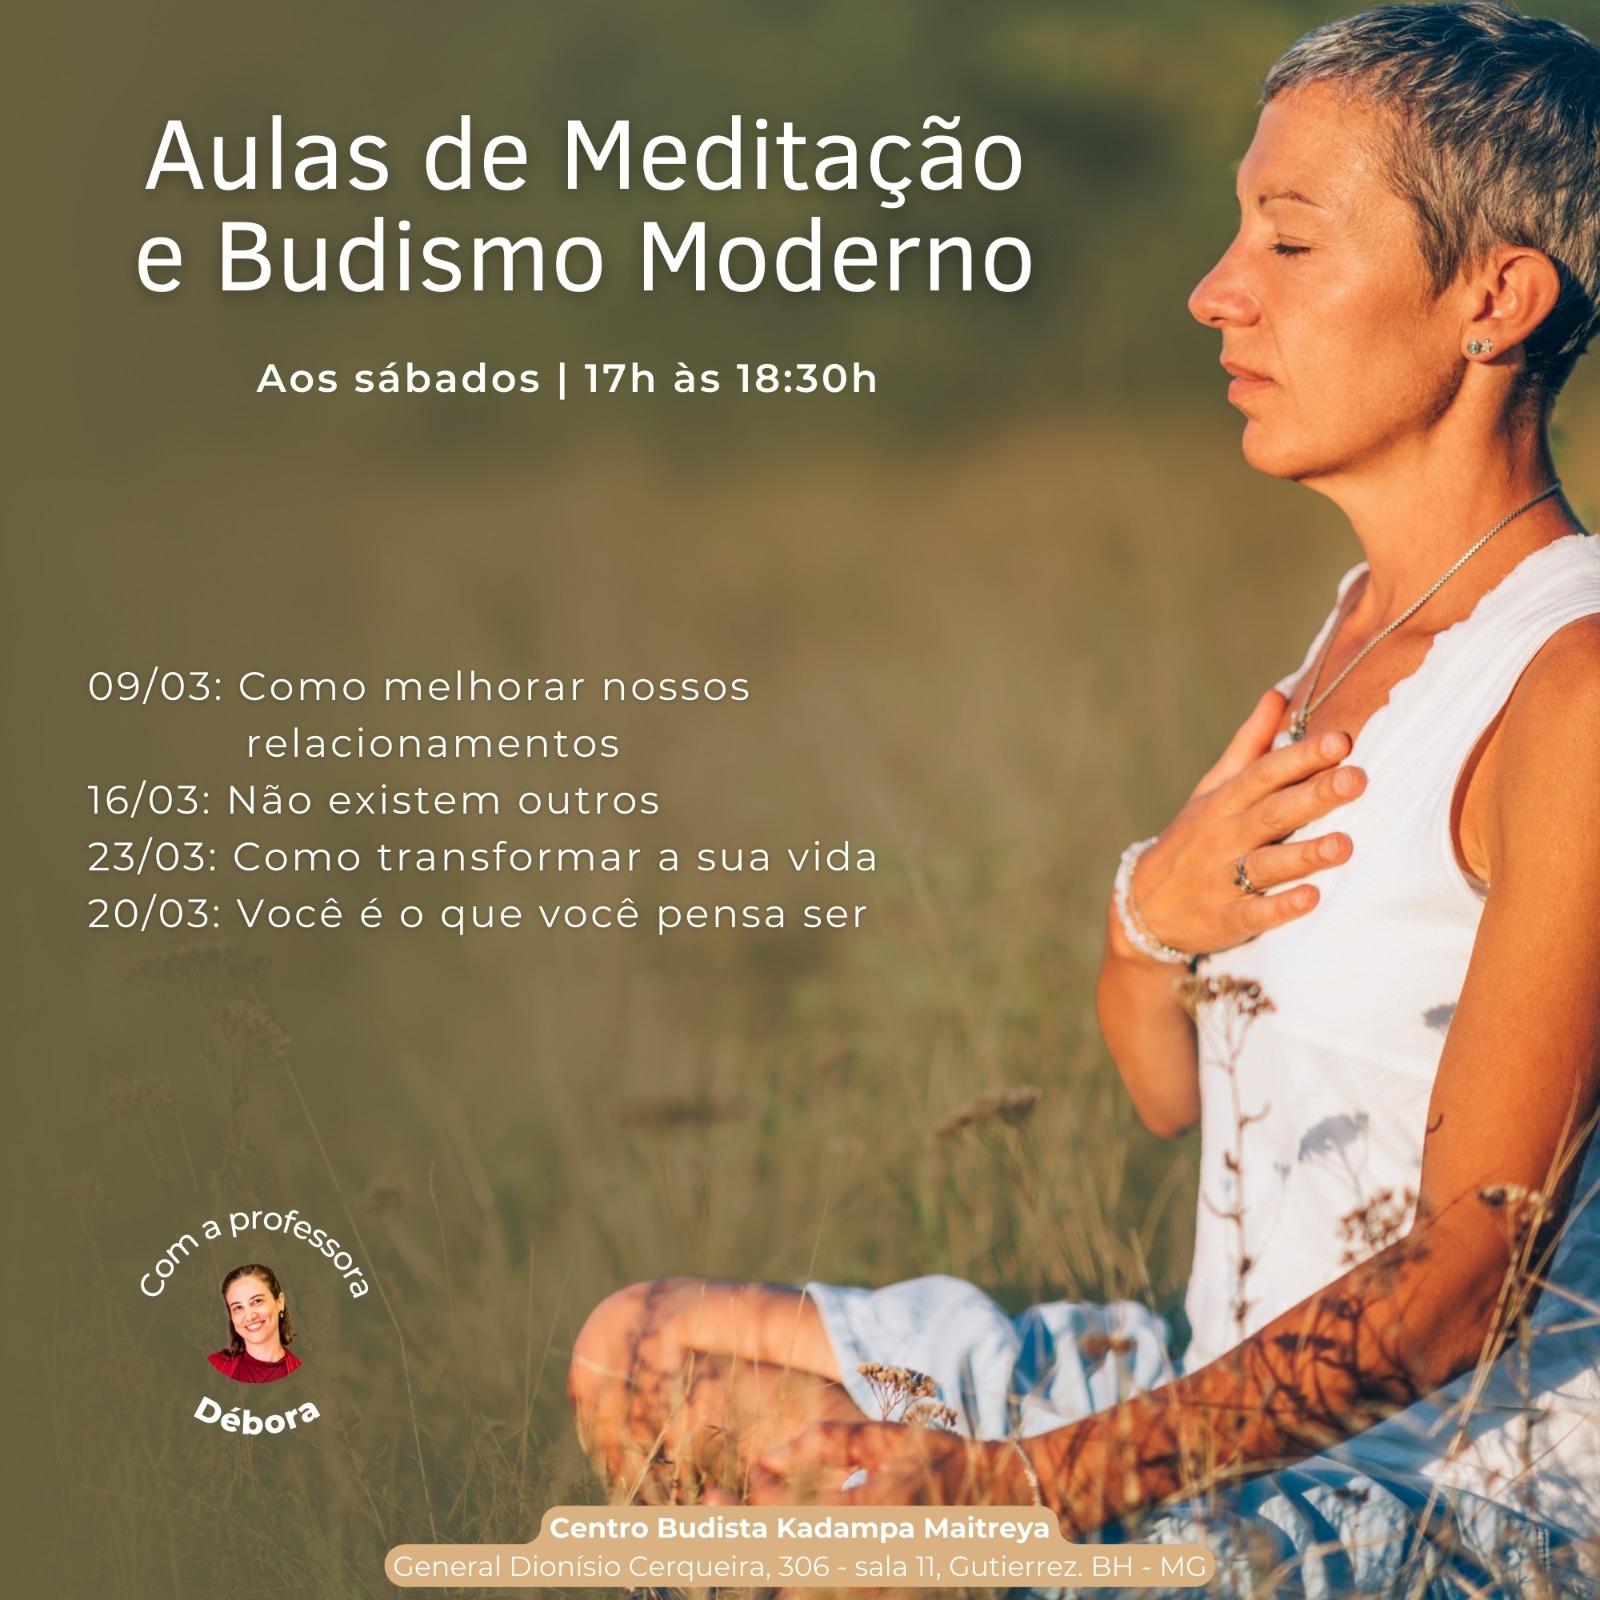 Aulas de Meditação e Budismo Moderno - Sábados às 17h